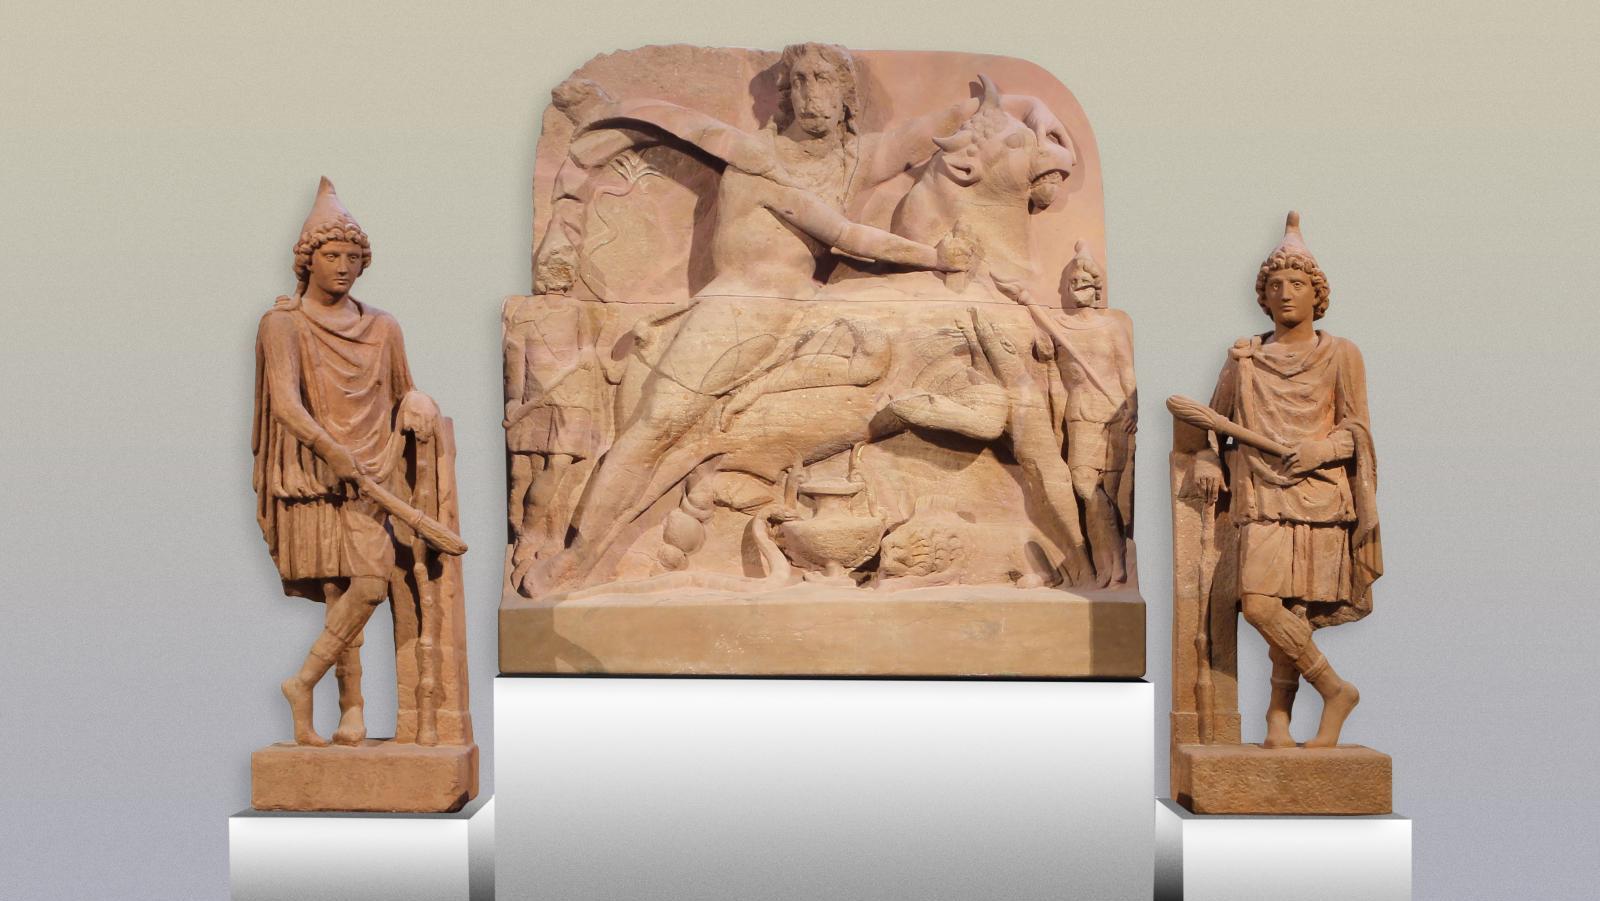 Relief tauroctonique et statues de Cautès et Cautopatès, mithreaum III de Nida-Heddernheim.... Le culte de Mithra au musée Royal de Mariemont